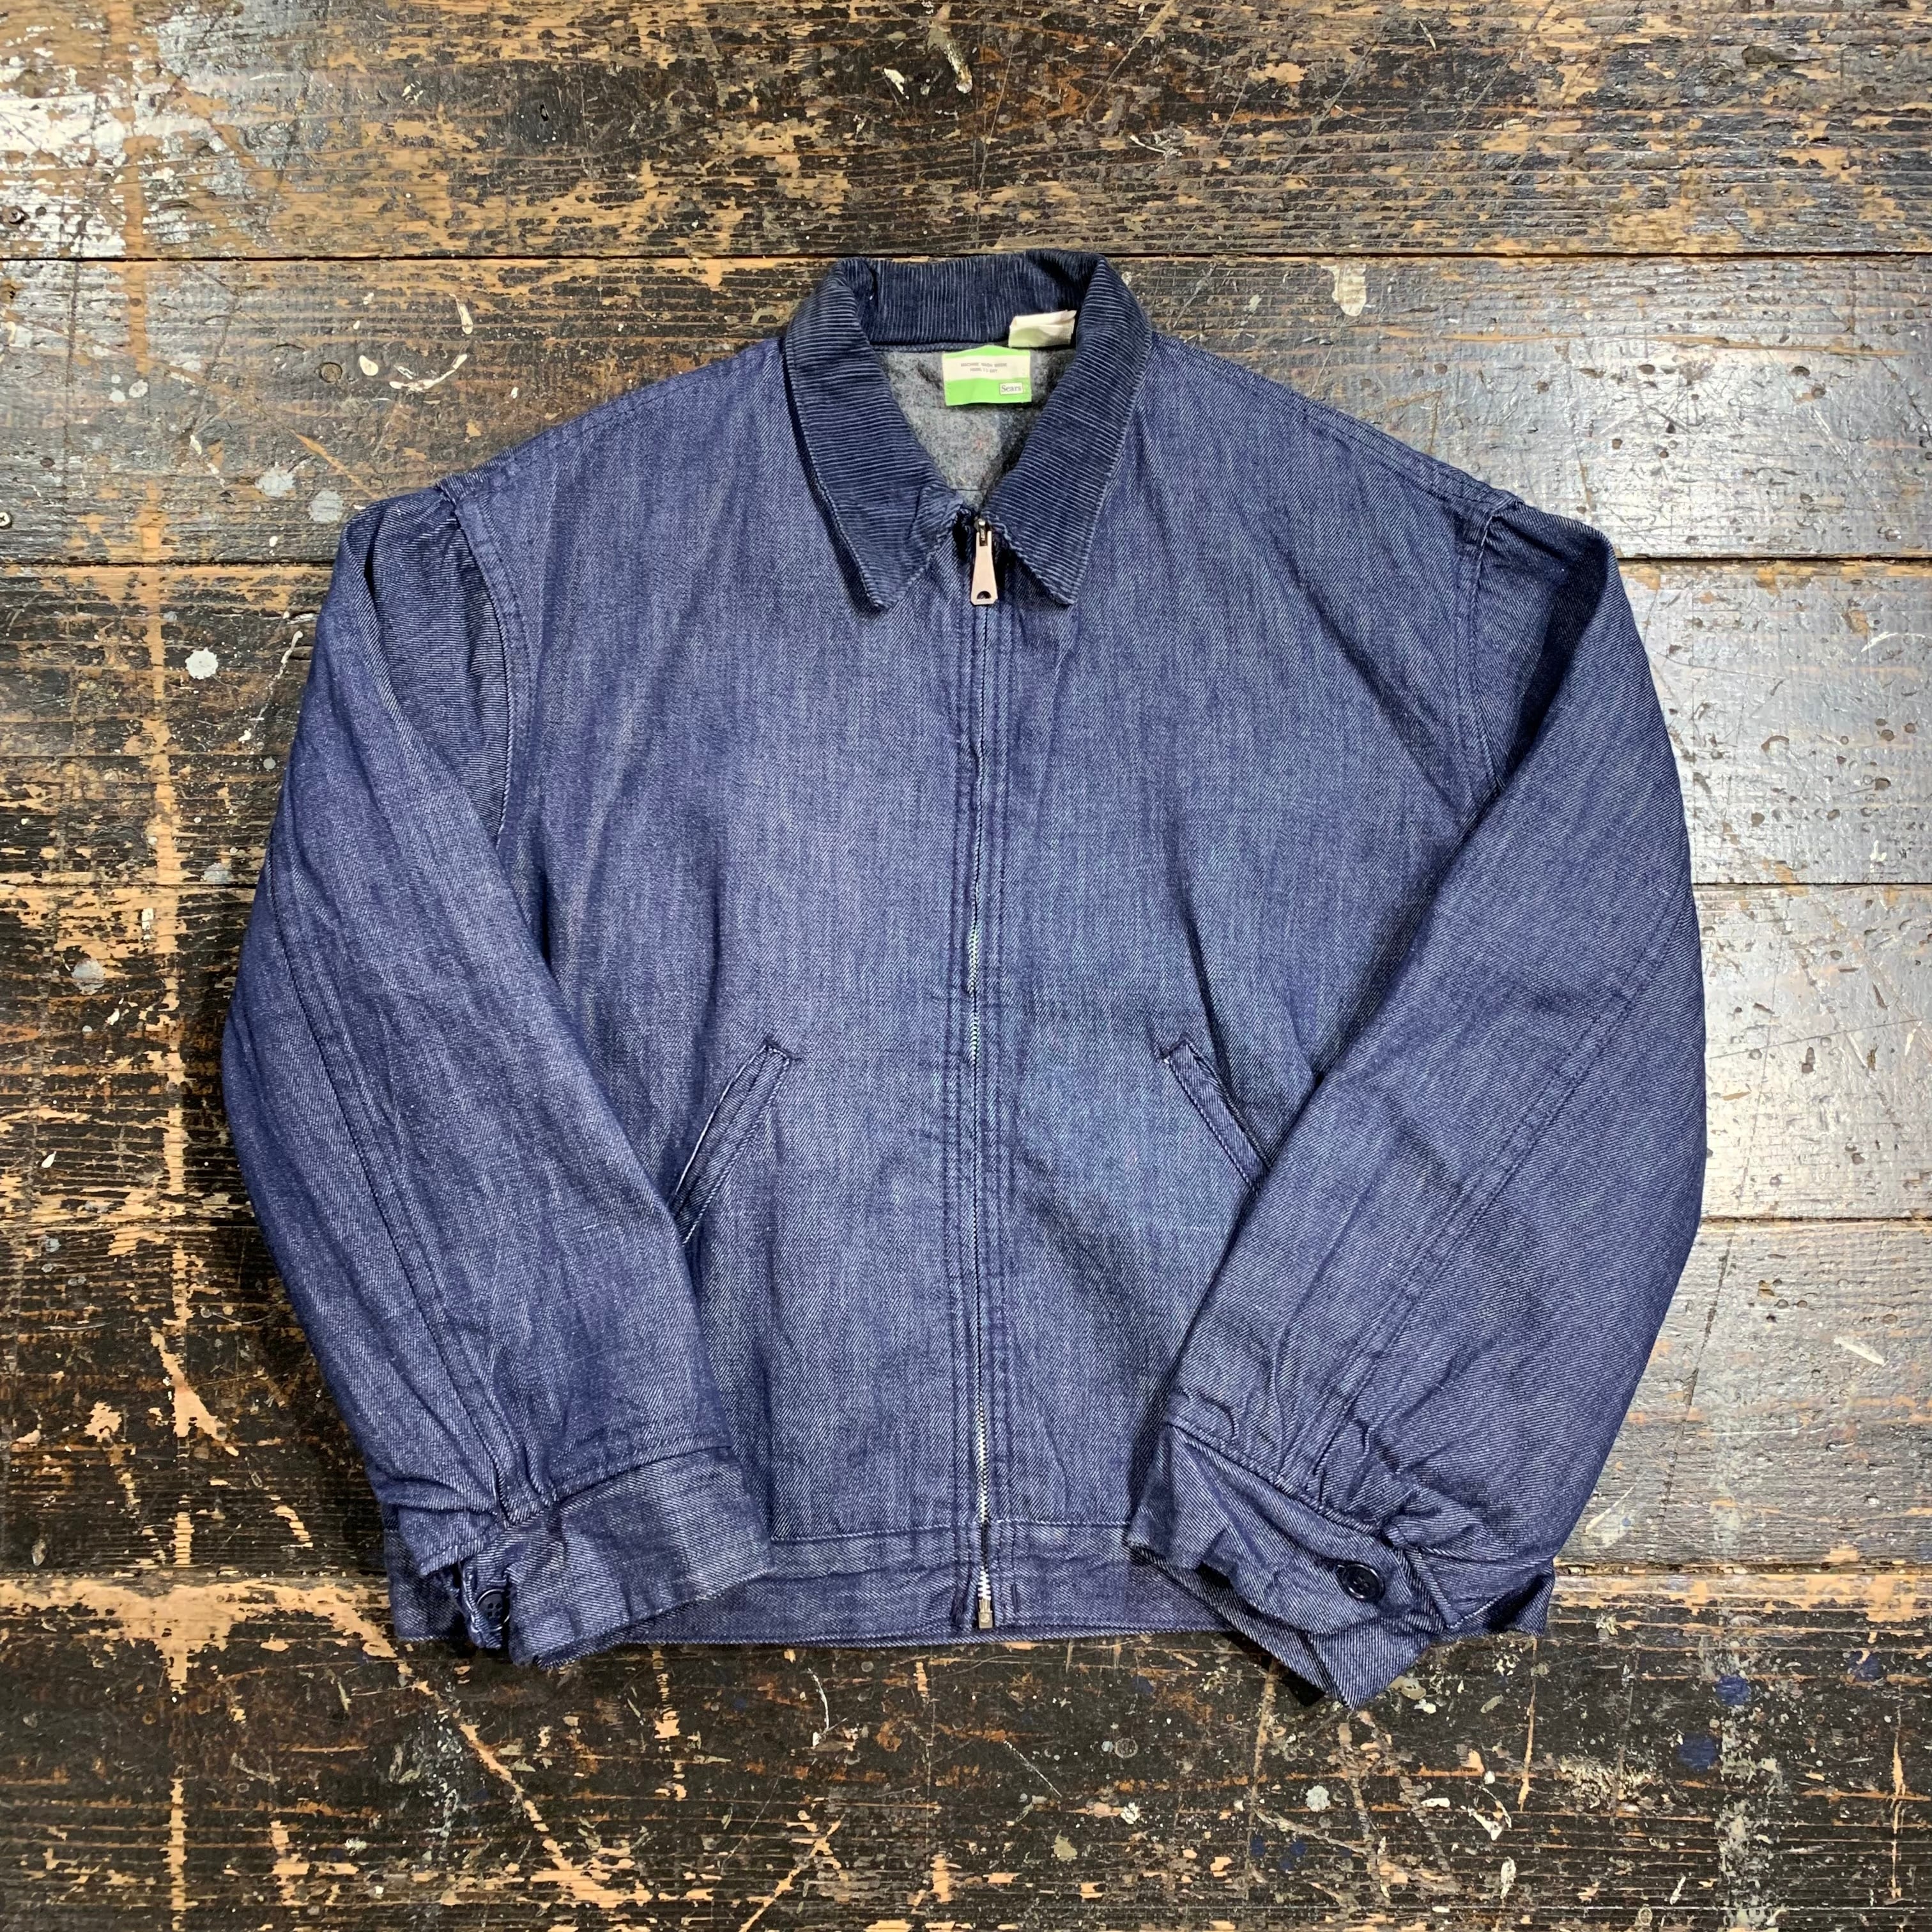 1970s SEARS denim work jacket 1970年代 シアーズ デニム ワークジャケット ブランケット付 濃紺  デッドストックビンテージ ヴィンテージ vintage